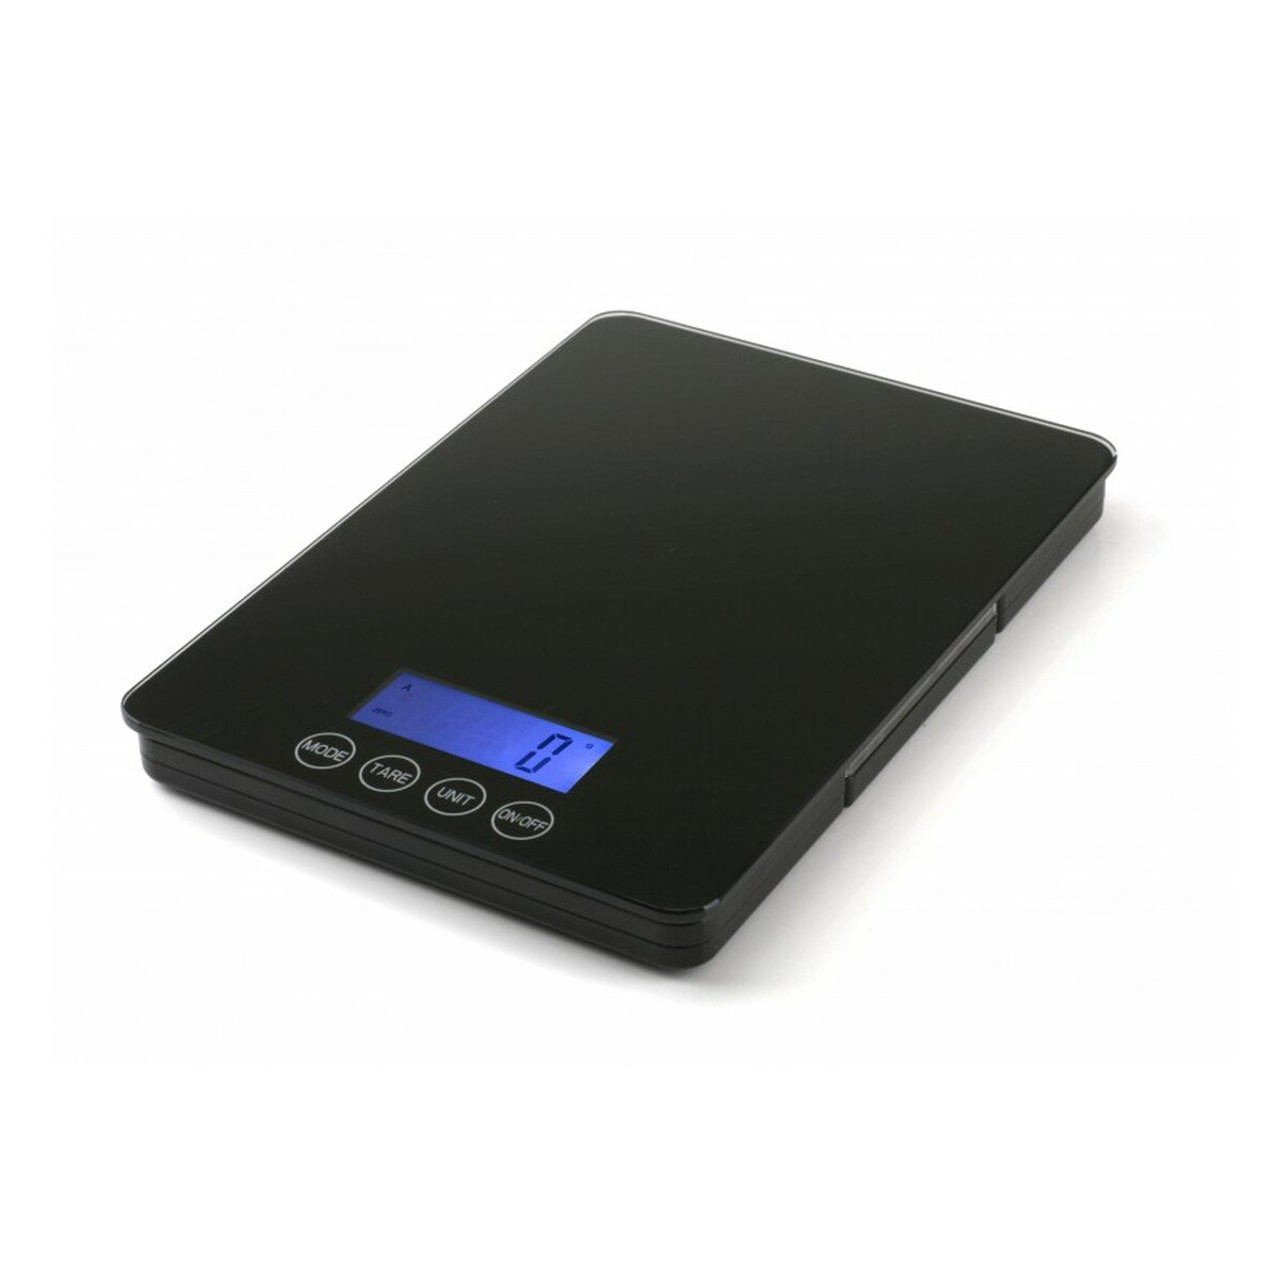 CAS SW-5Z Portable Digital Scale LB-OZ, 5 lb x 0.002 lb